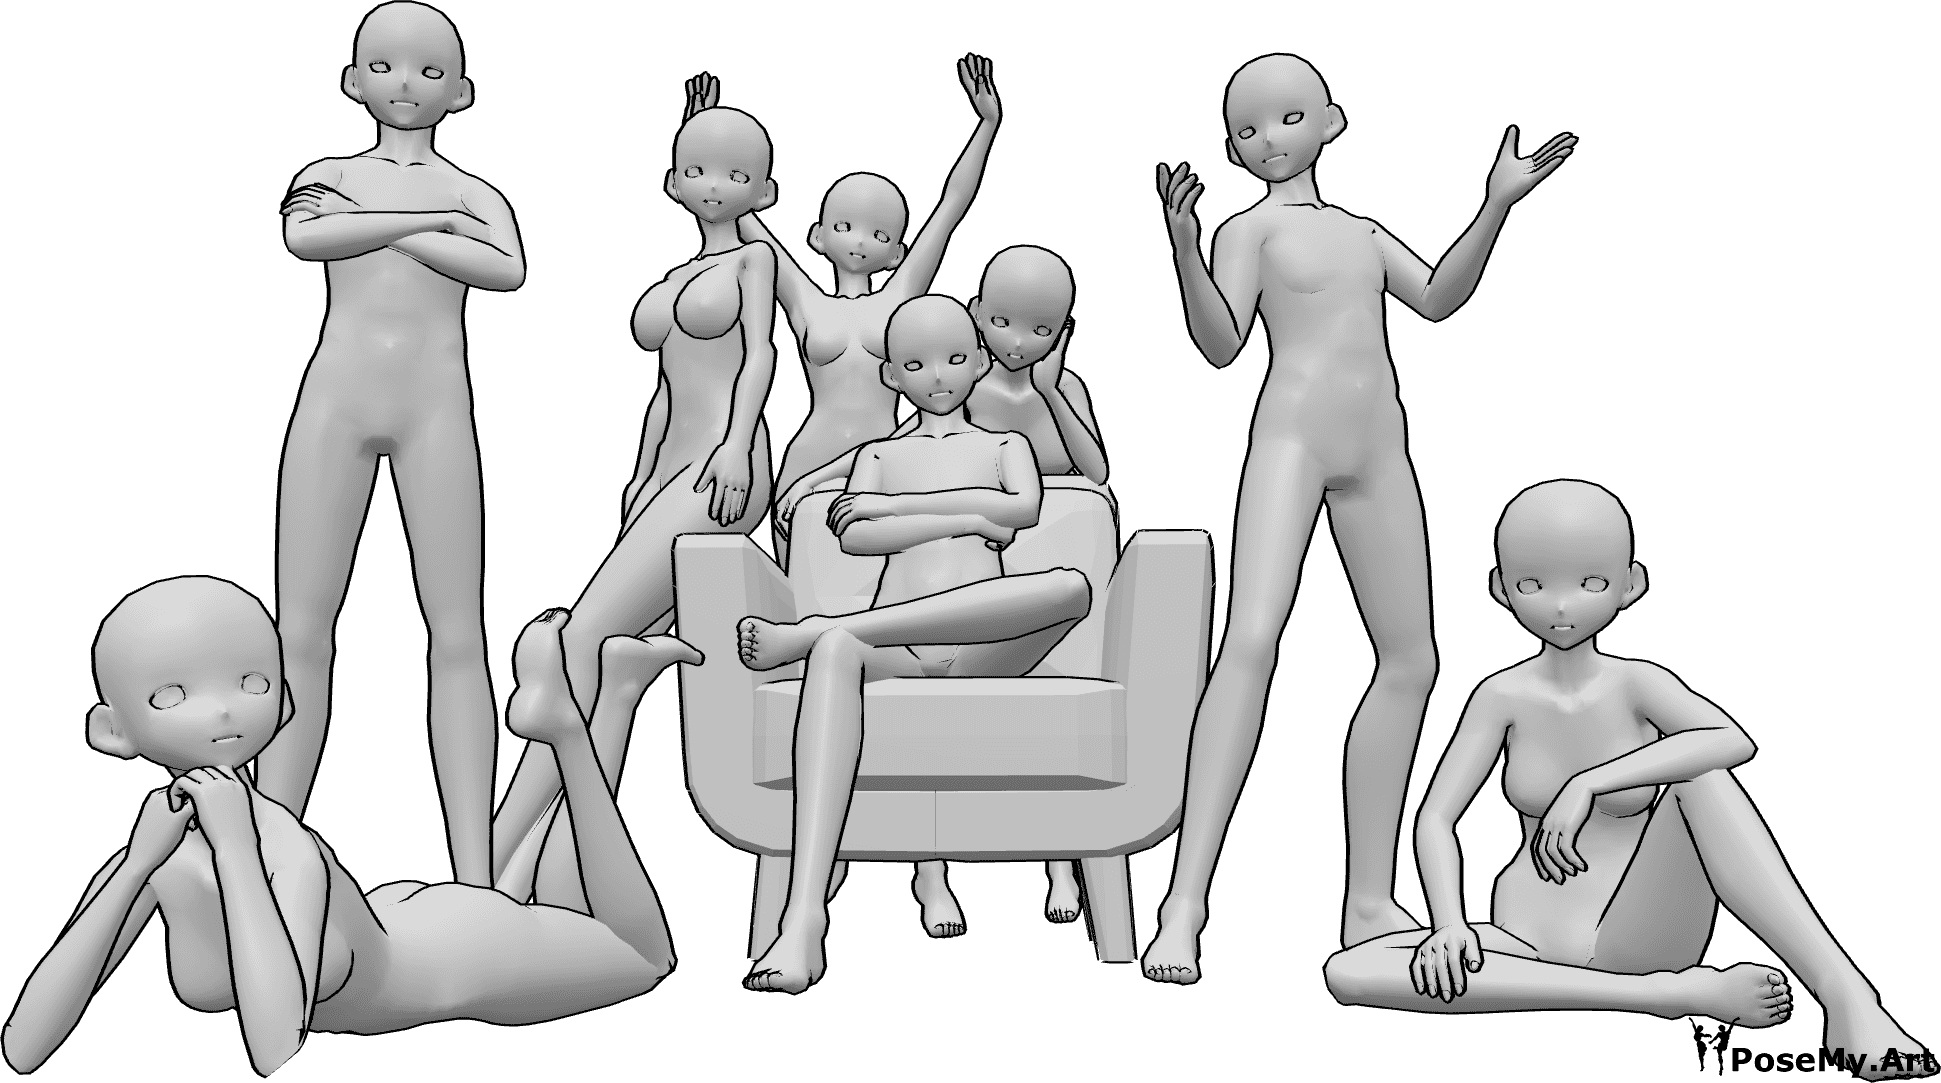 Posen-Referenz- Anime-Gruppenfoto-Pose - Eine Gruppe von acht weiblichen und männlichen Animateuren posiert für ein freundliches Gruppenfoto, sitzend und stehend